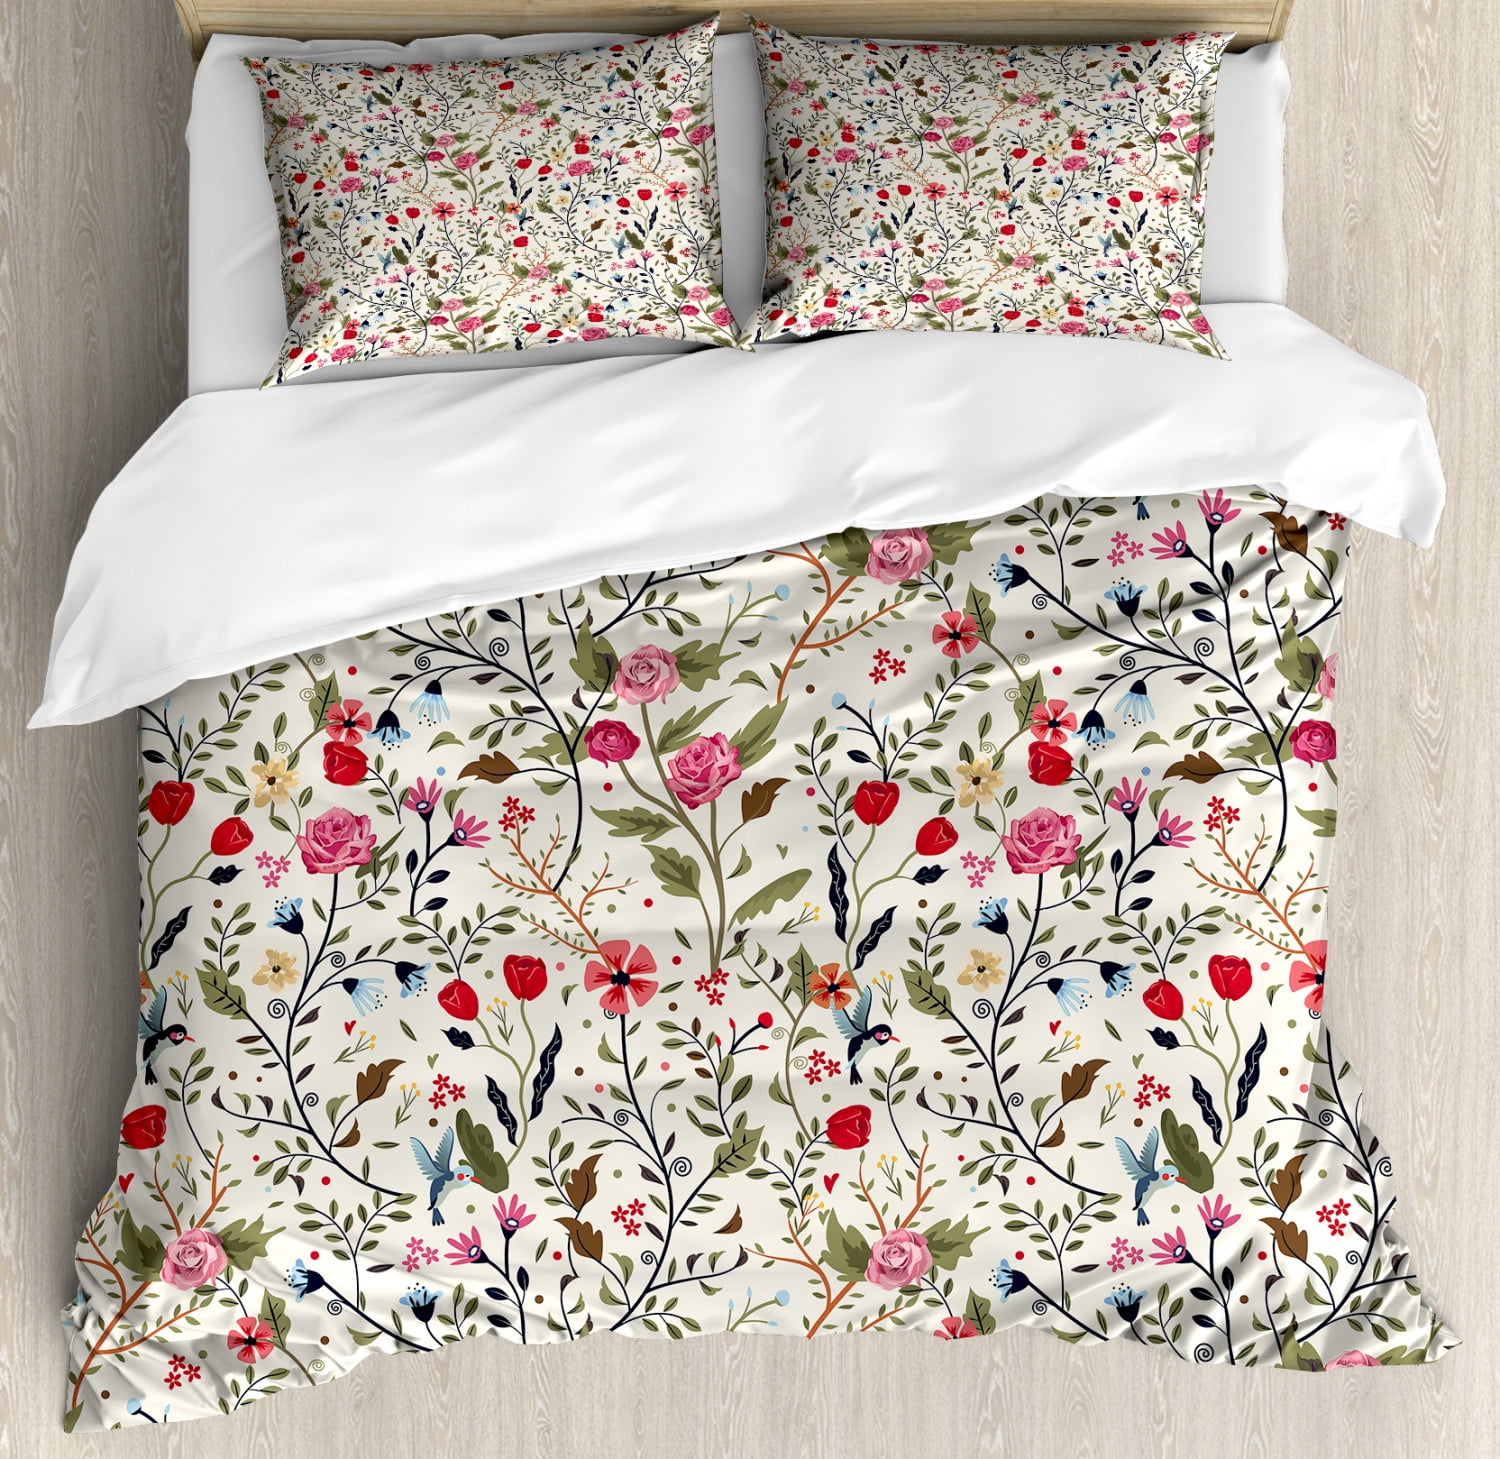 Grace Printed floral Leaves Duvet Cover Bedding Set